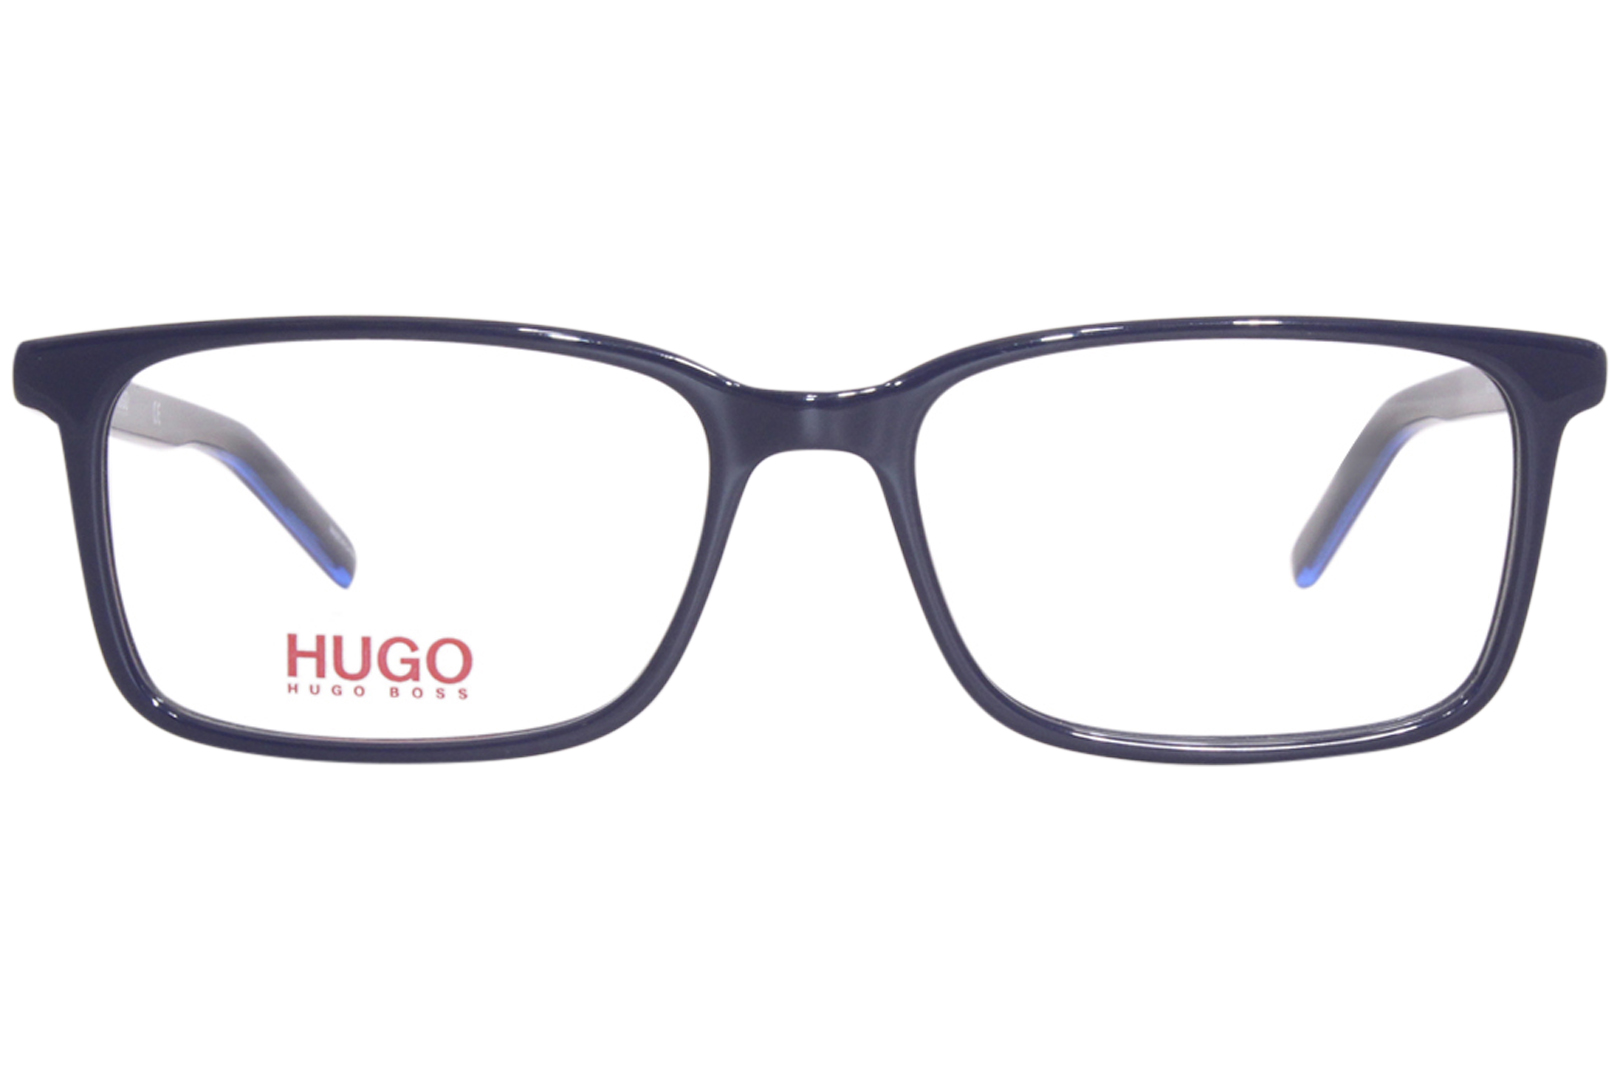 Hugo Boss HG-1029 PJP Eyeglasses Men's Blue Full Rim Square Shape 54-17 ...